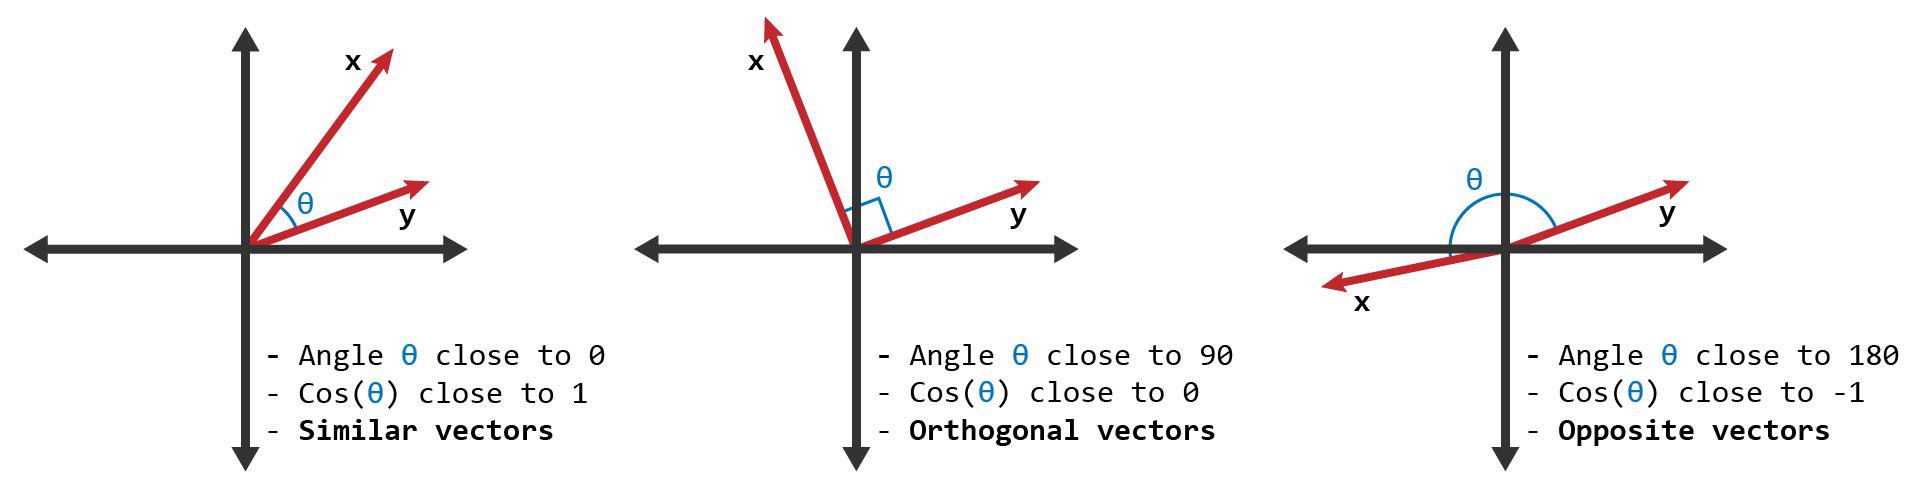 Cosine similarity between two vectors